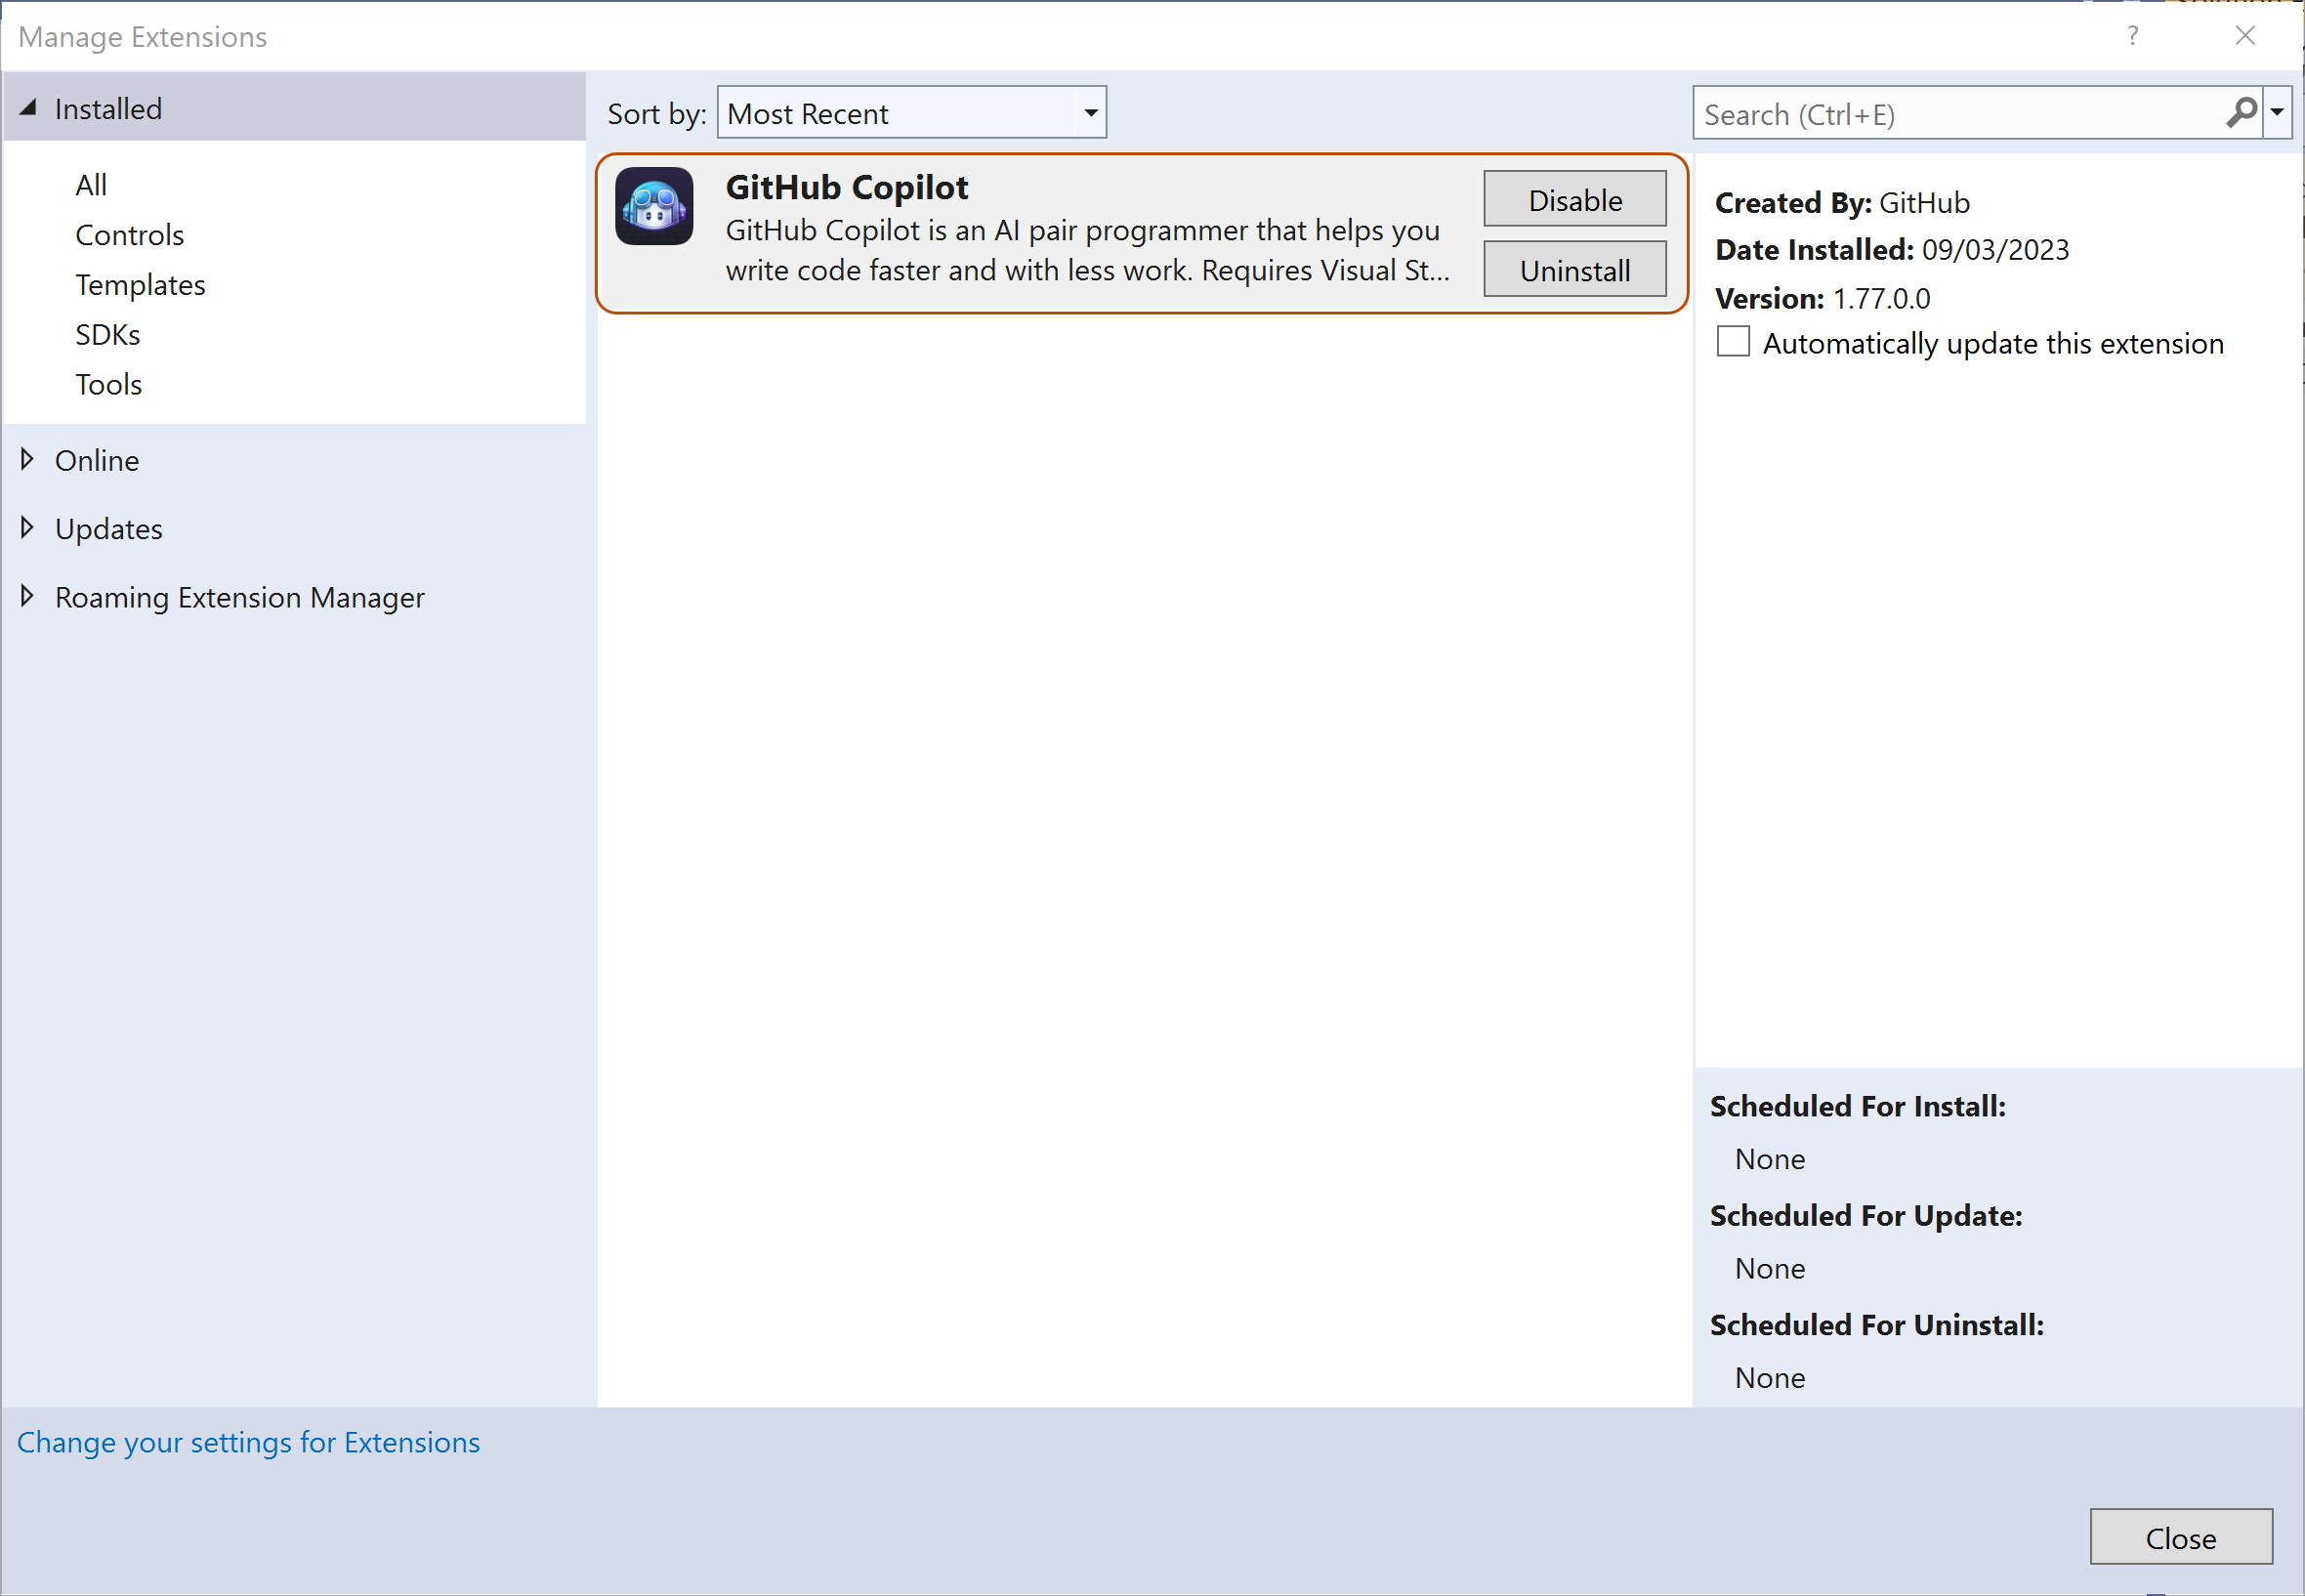 Visual Studio 中已安装扩展的列表的屏幕截图。 “GitHub Copilot”扩展以橙色轮廓突出显示。